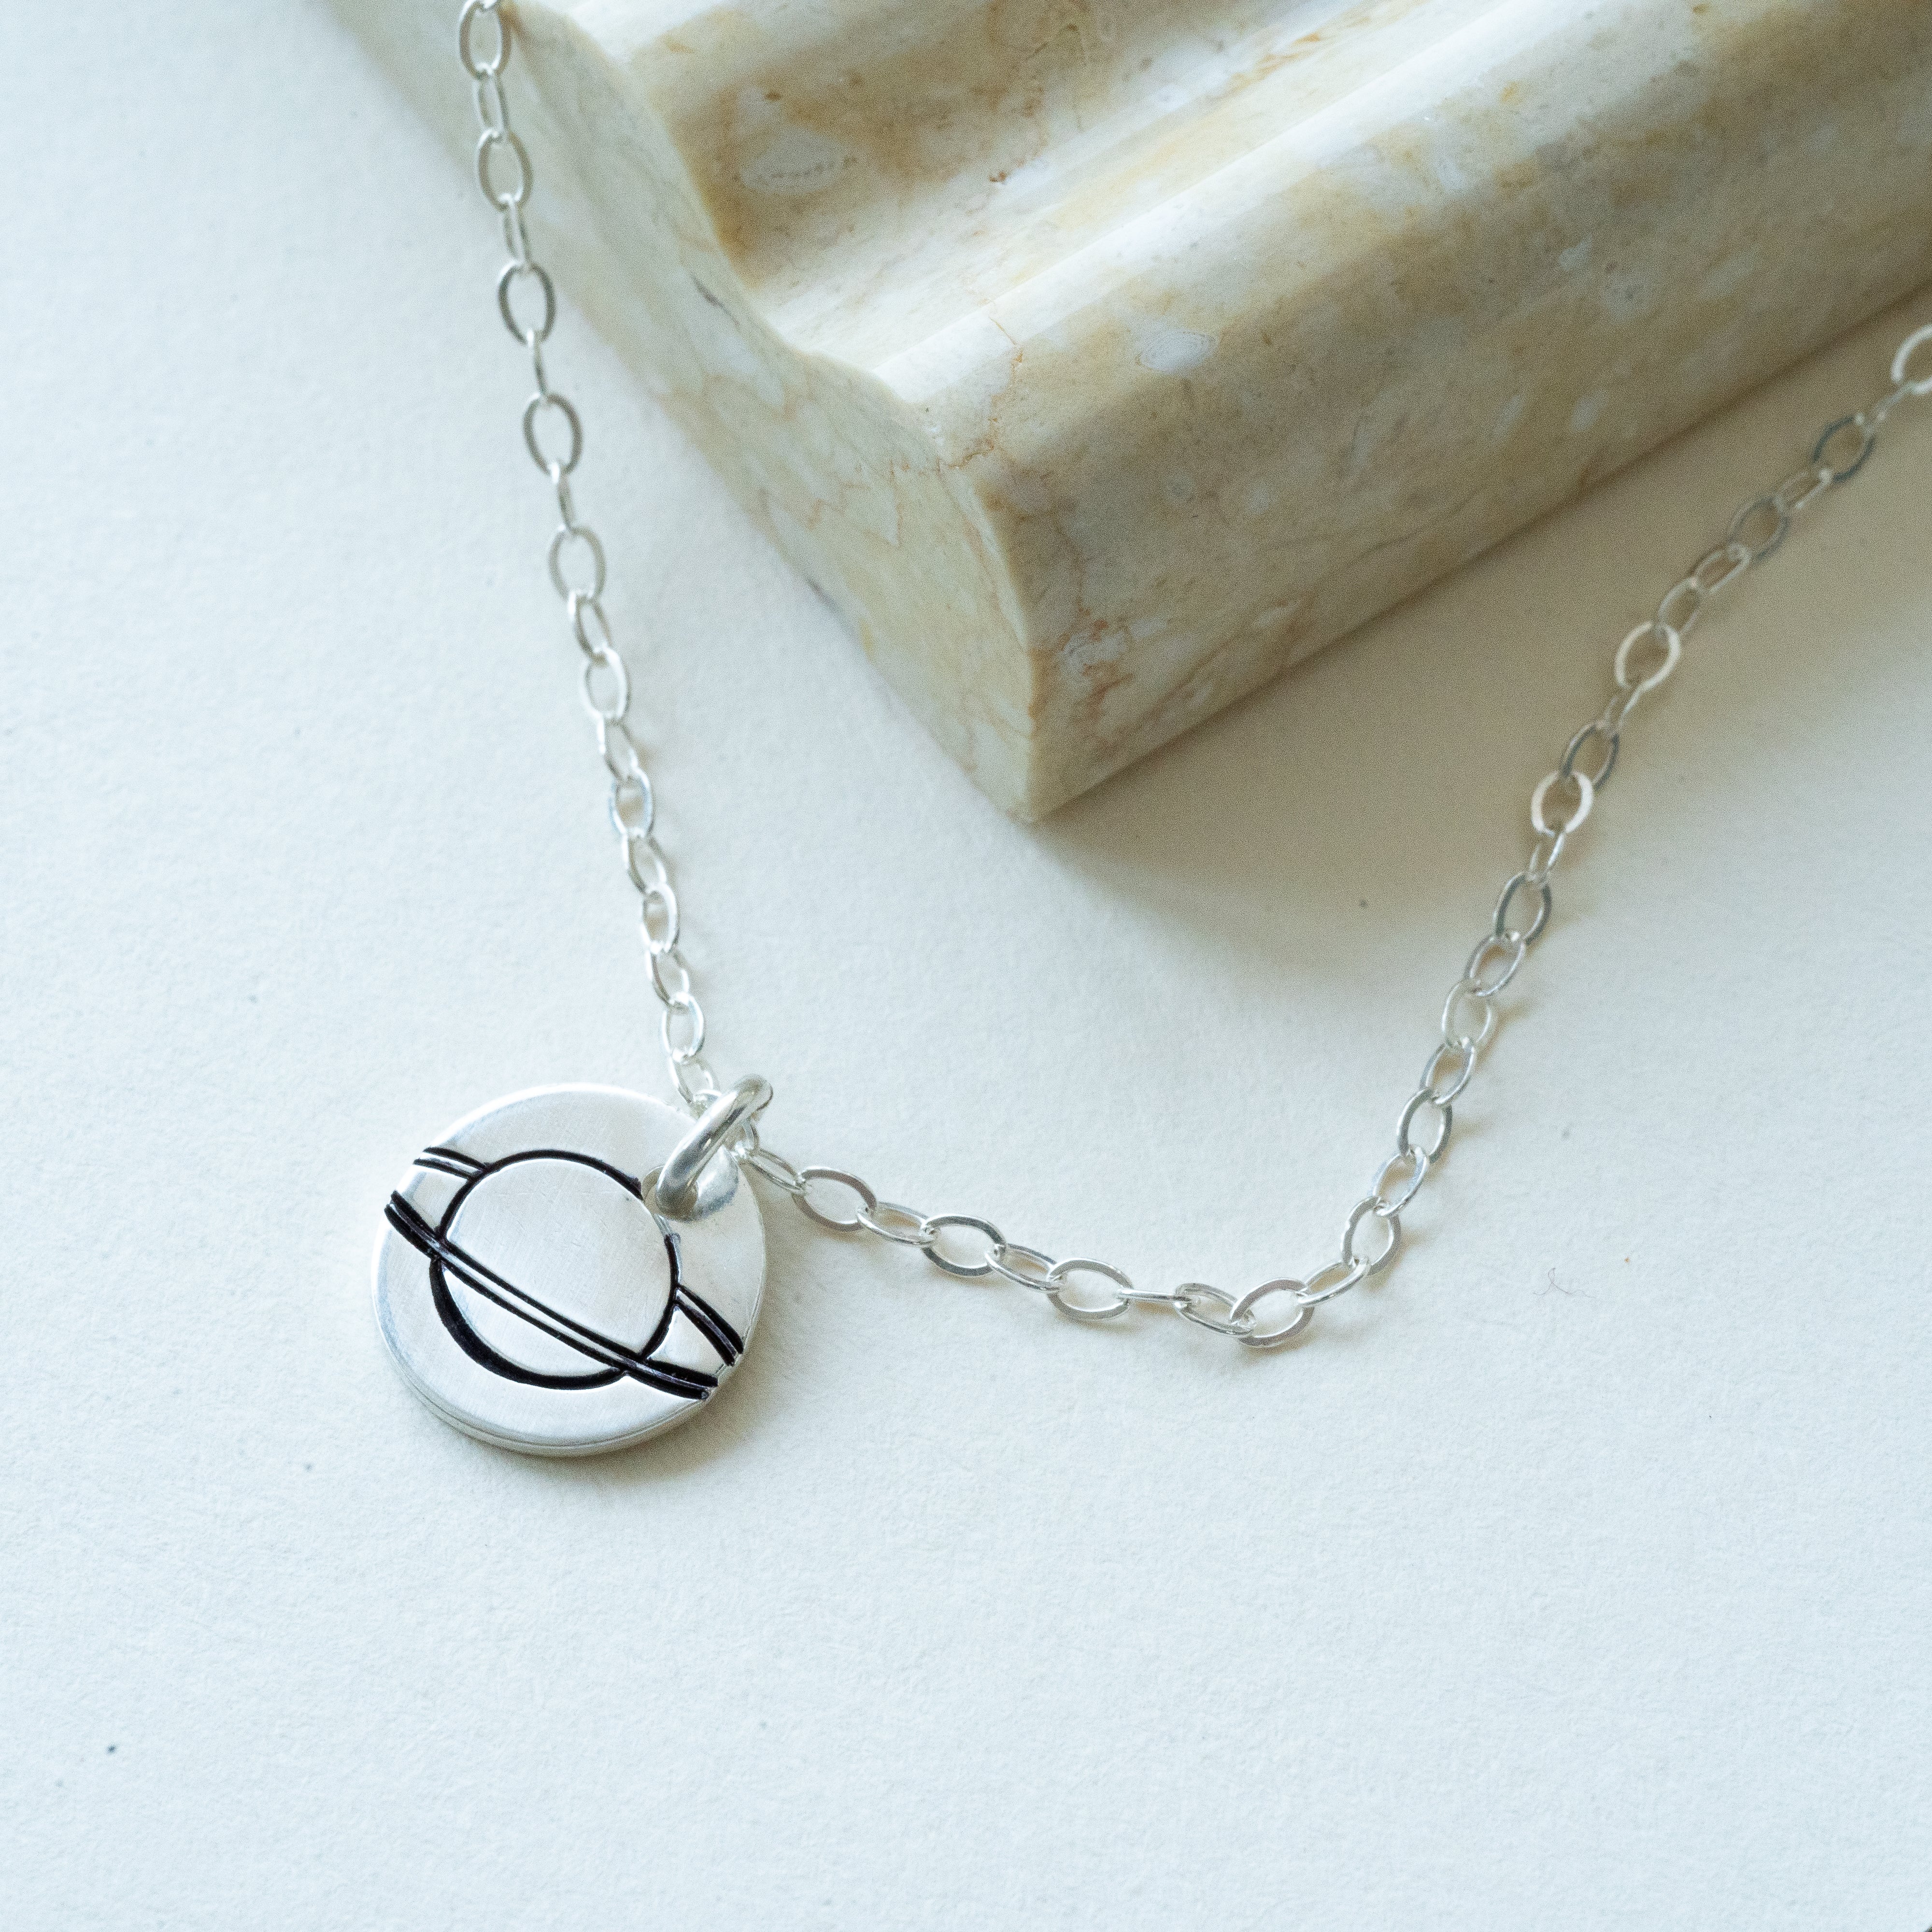 Gold Planet Necklace • Saturn Pendant Necklace • Nana Saturn Necklace | Saturn  necklace, Planet jewelry, Planet necklace